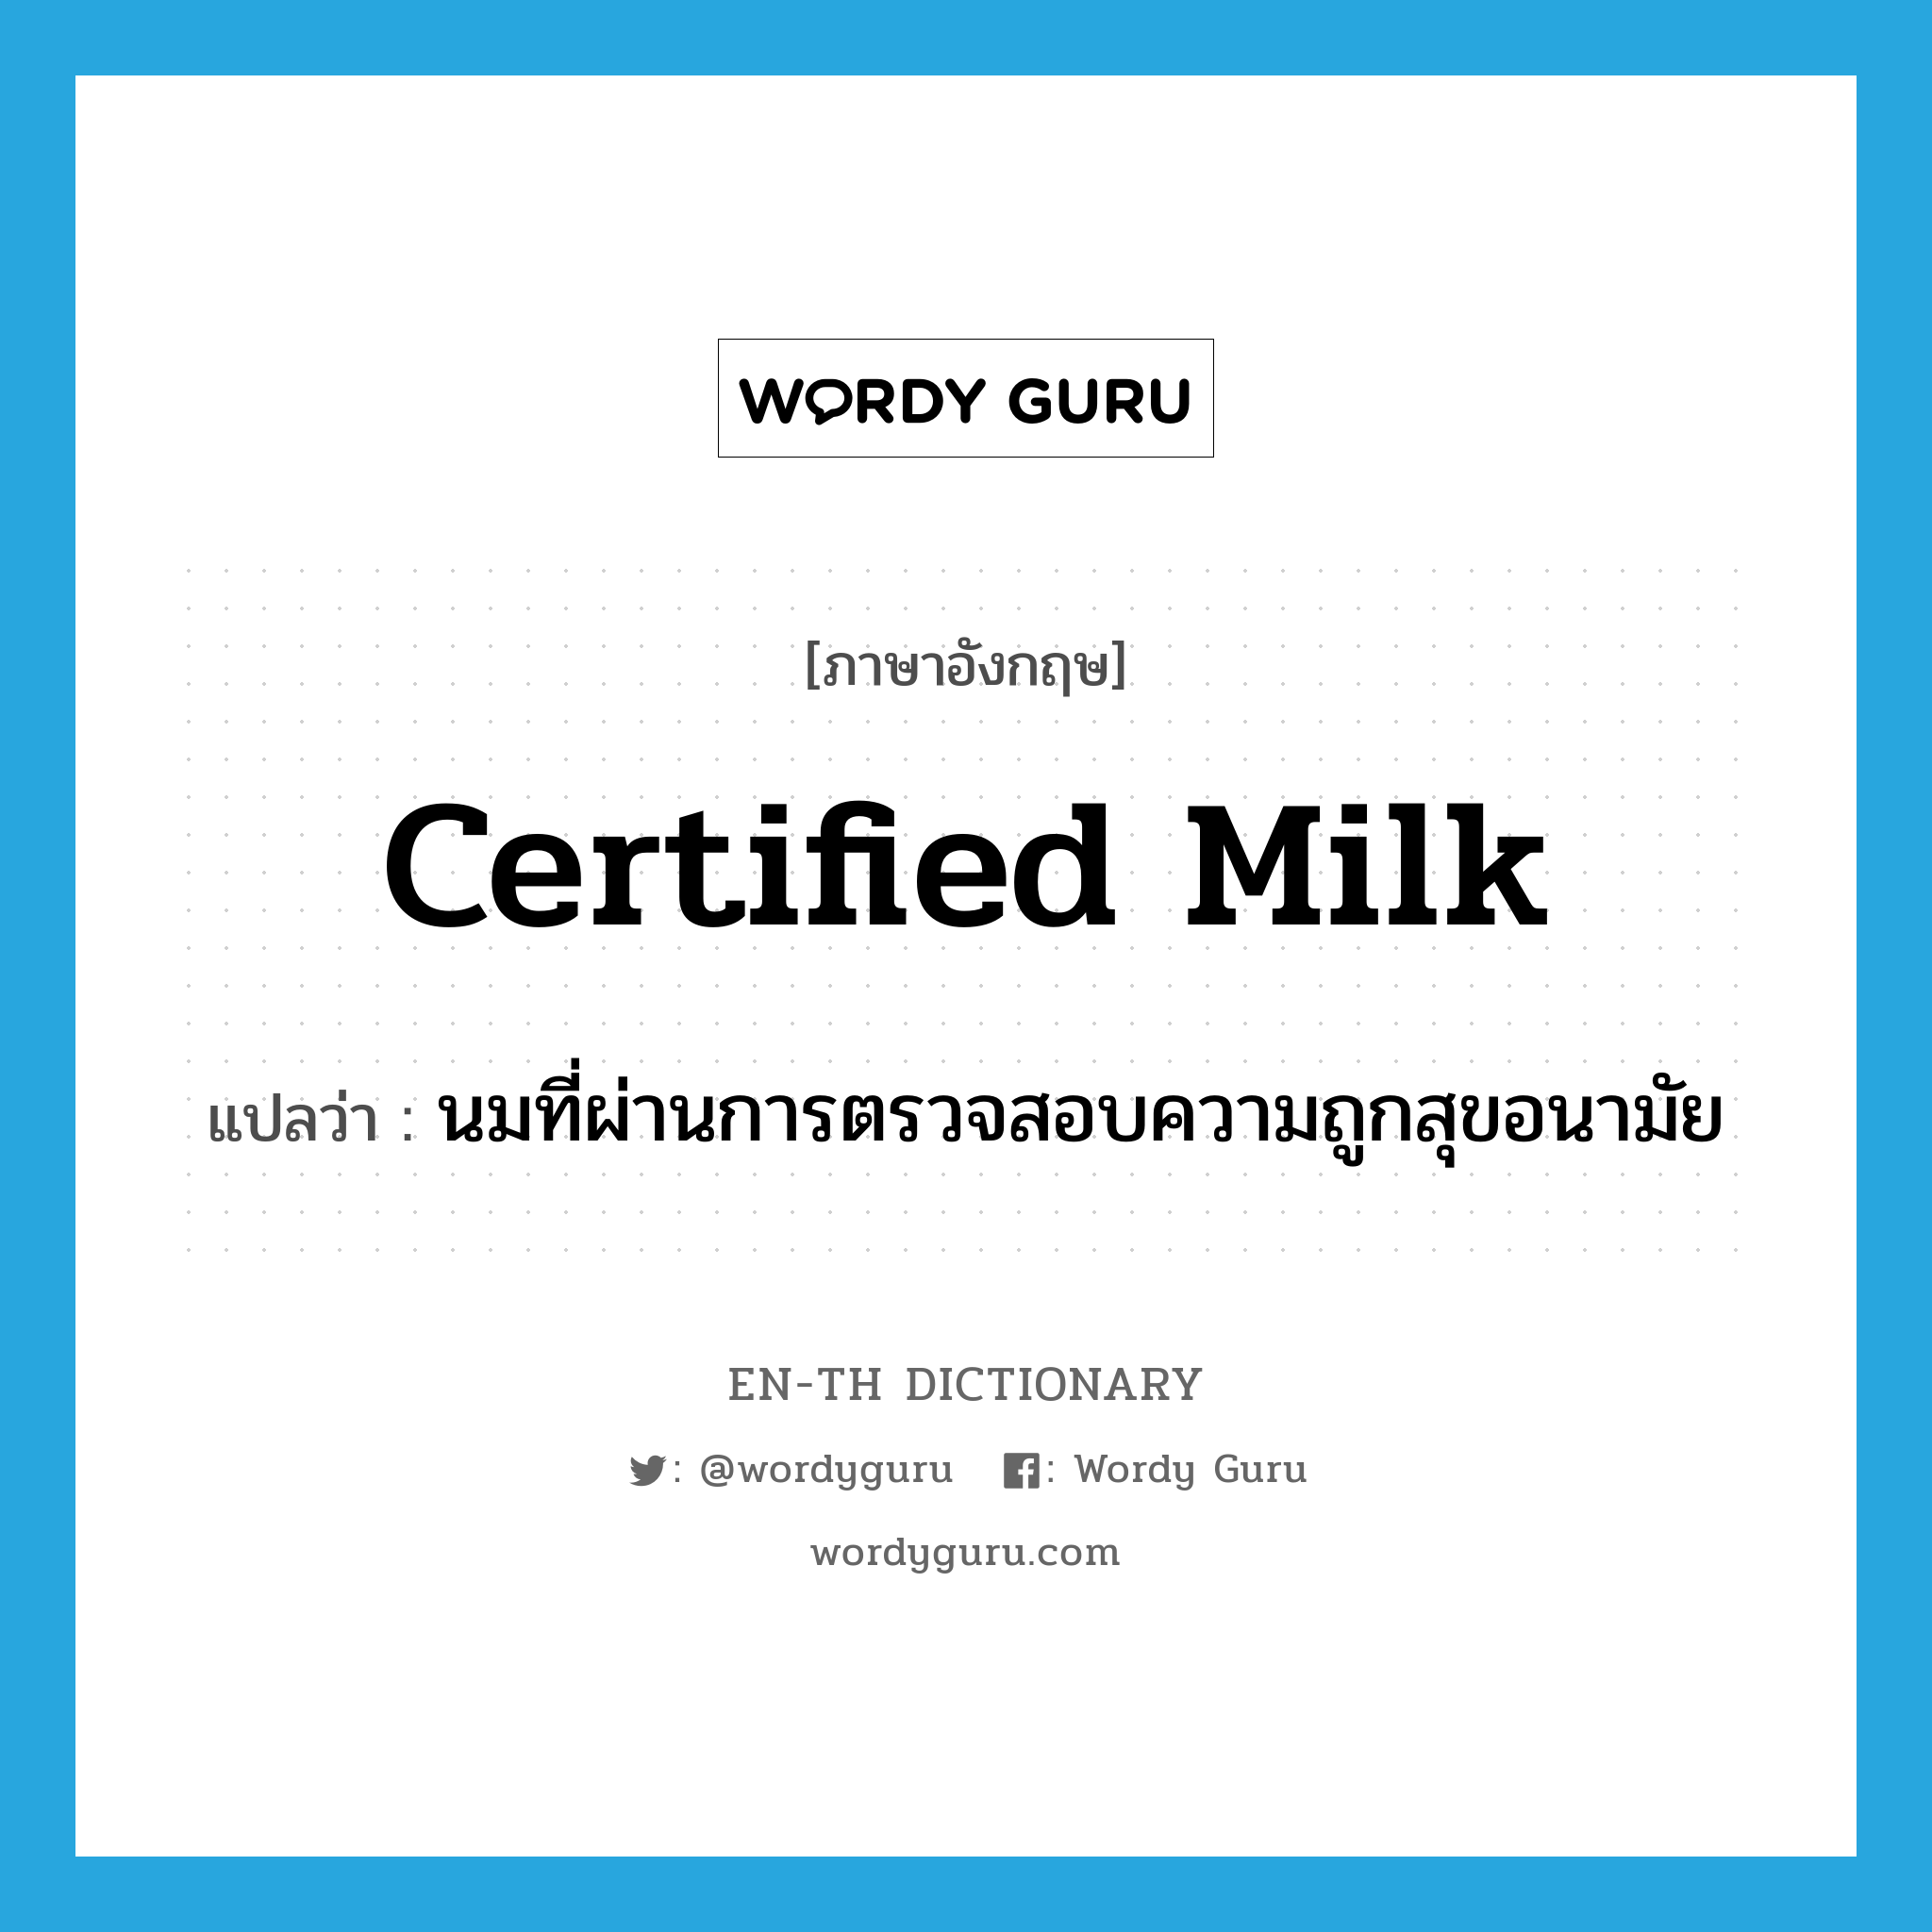 certified milk แปลว่า?, คำศัพท์ภาษาอังกฤษ certified milk แปลว่า นมที่ผ่านการตรวจสอบความถูกสุขอนามัย ประเภท N หมวด N